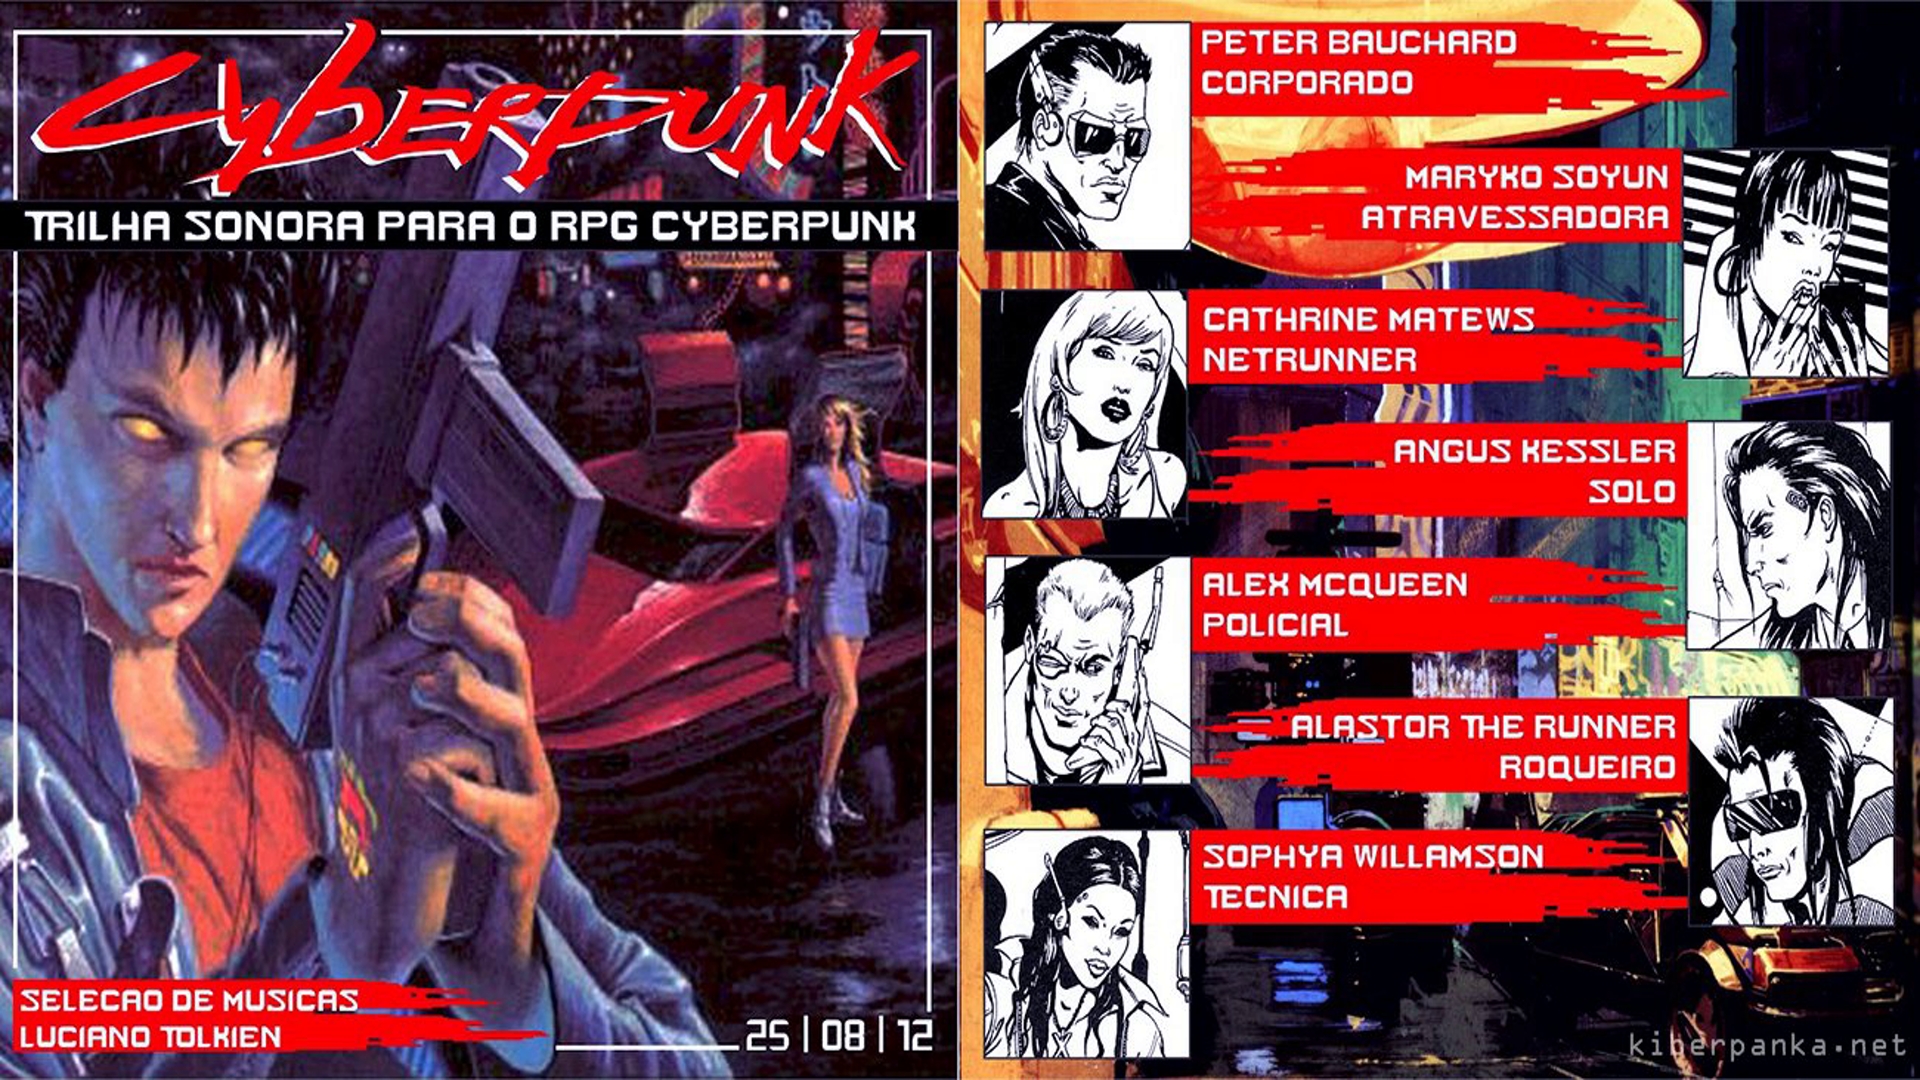 Cyberpunk red приключения фото 13